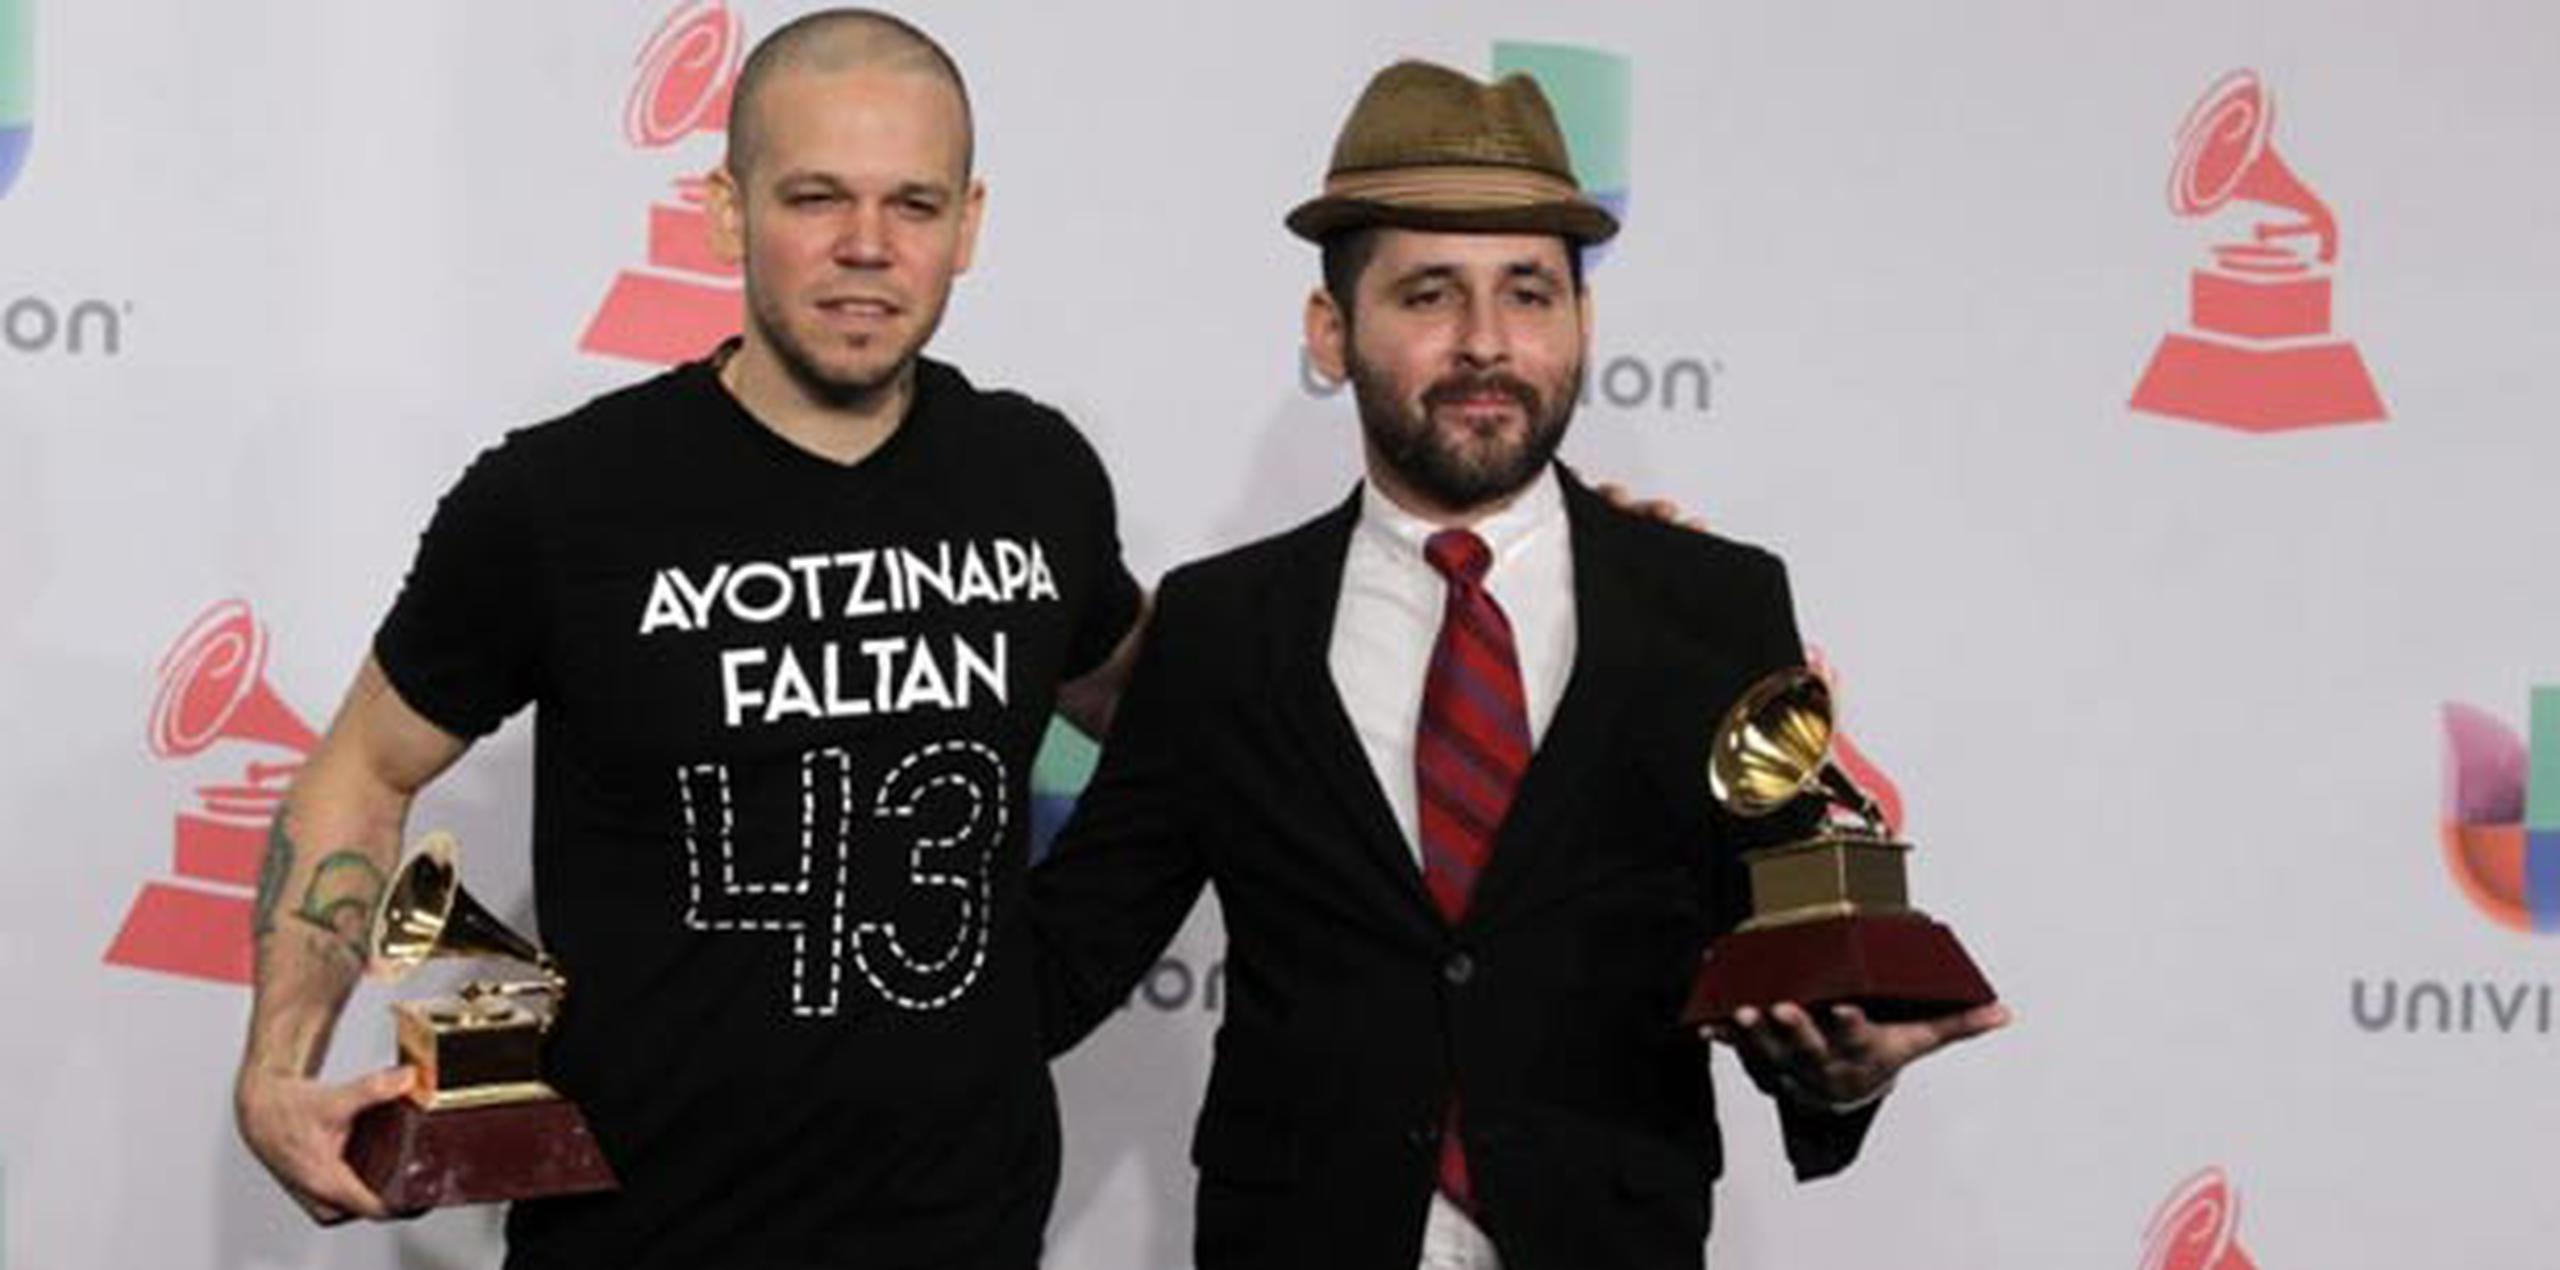 Calle 13 se llevó dos premios: Mejor álbum de música urbana, por "MultiViral", y Mejor canción alternativa, por "El aguante". (AFP)